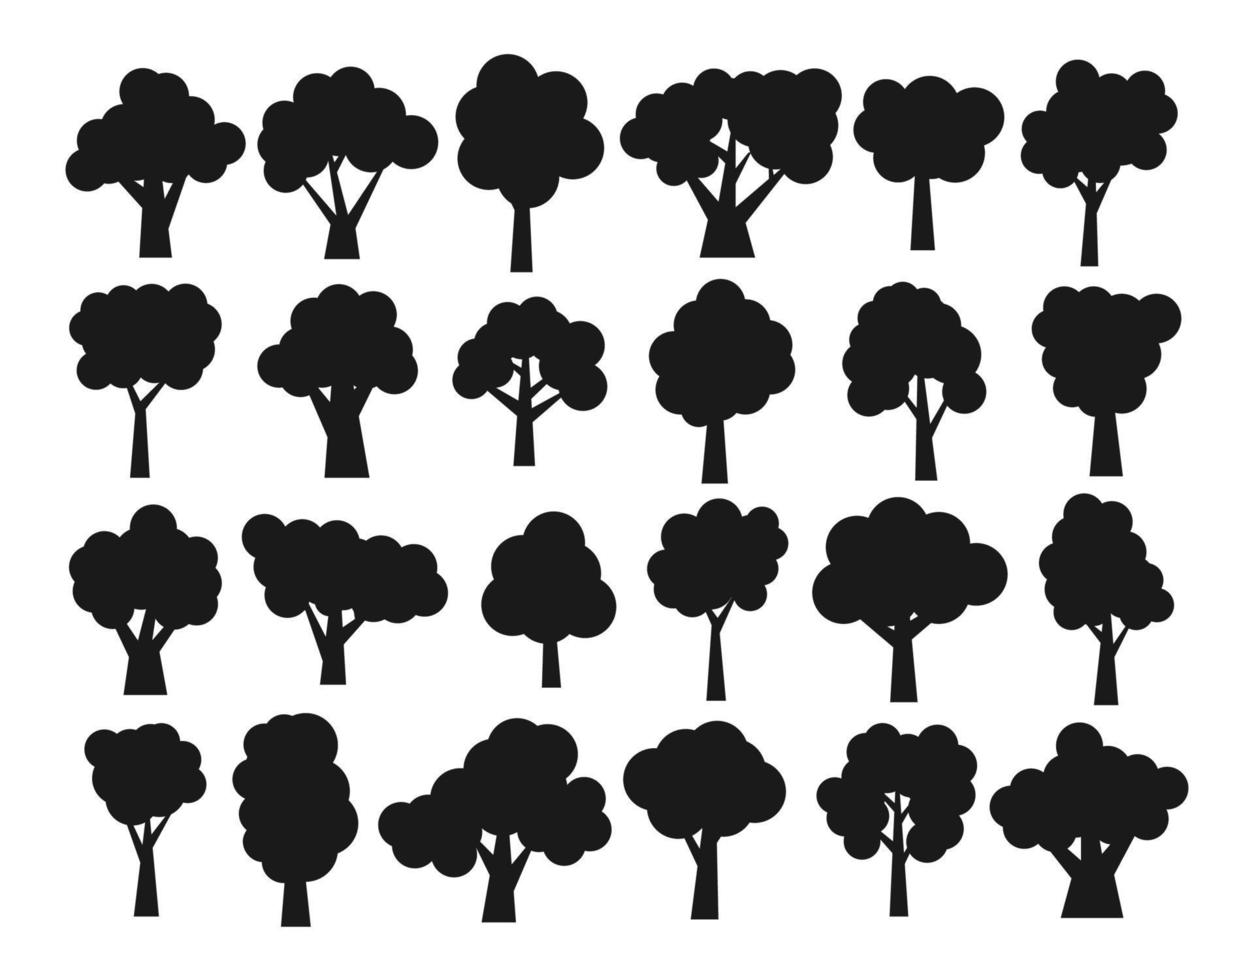 conjunto de veinticuatro siluetas oscuras diferentes de árboles de dibujos animados aislados en fondo blanco. ilustración vectorial vector